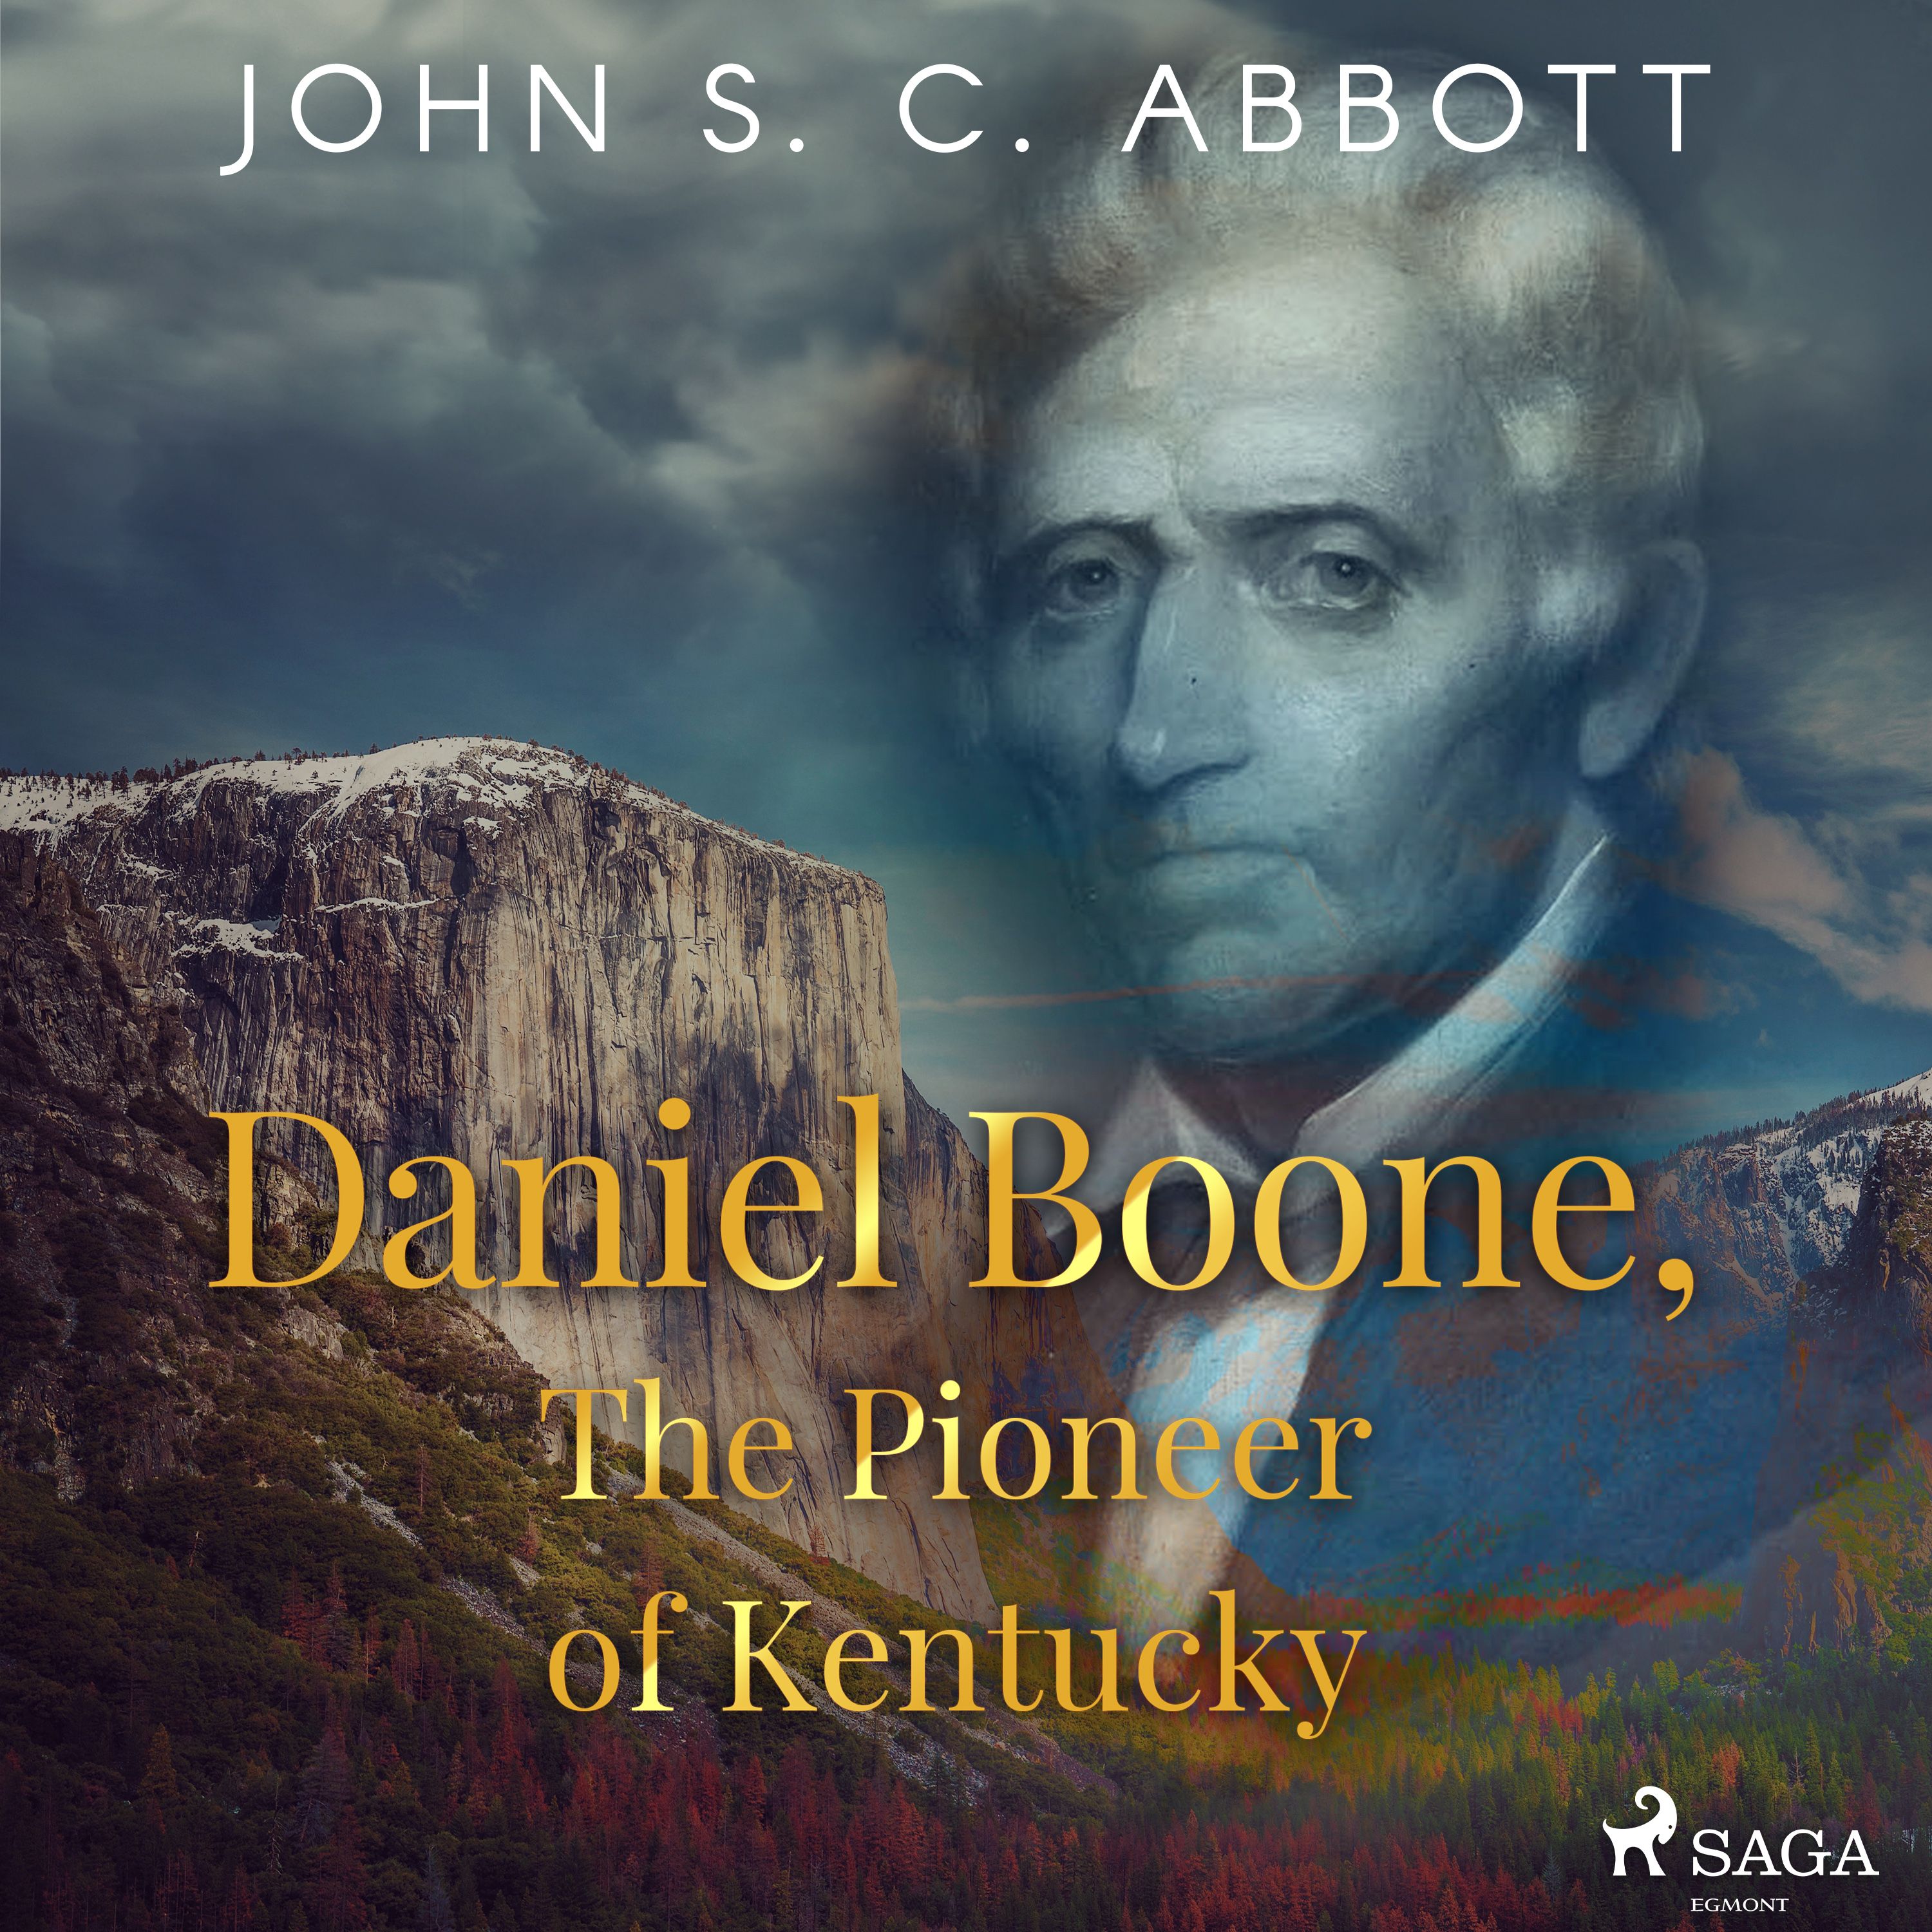 Daniel Boone, The Pioneer of Kentucky, ljudbok av John S. C. Abbott